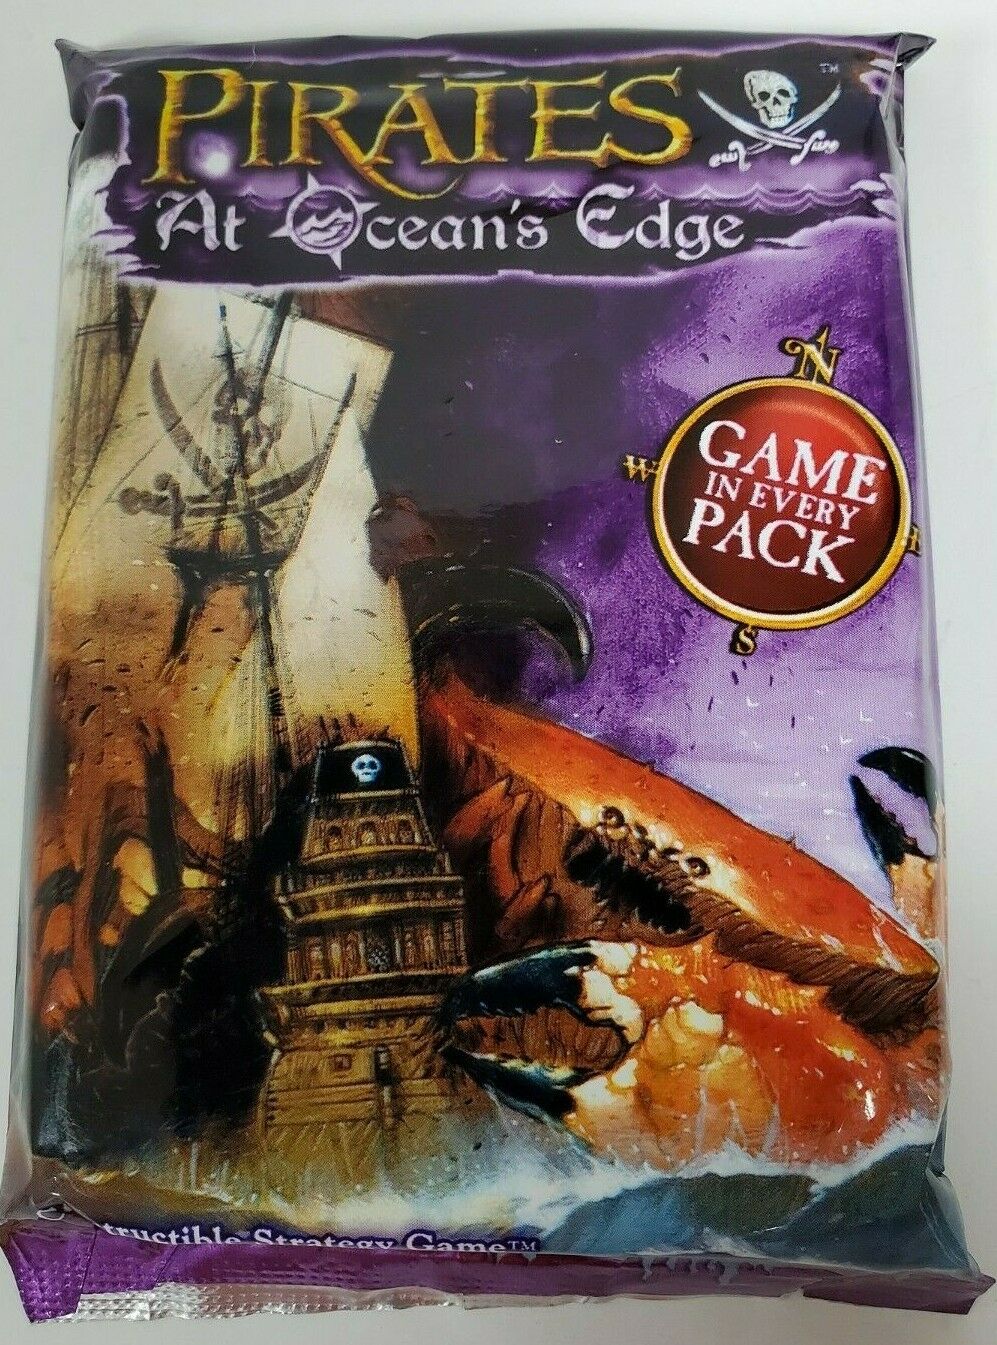 PIRATES AT OCEAN'S EDGE Sealed Game Pack Wizkids Pirates CSG WZK6141